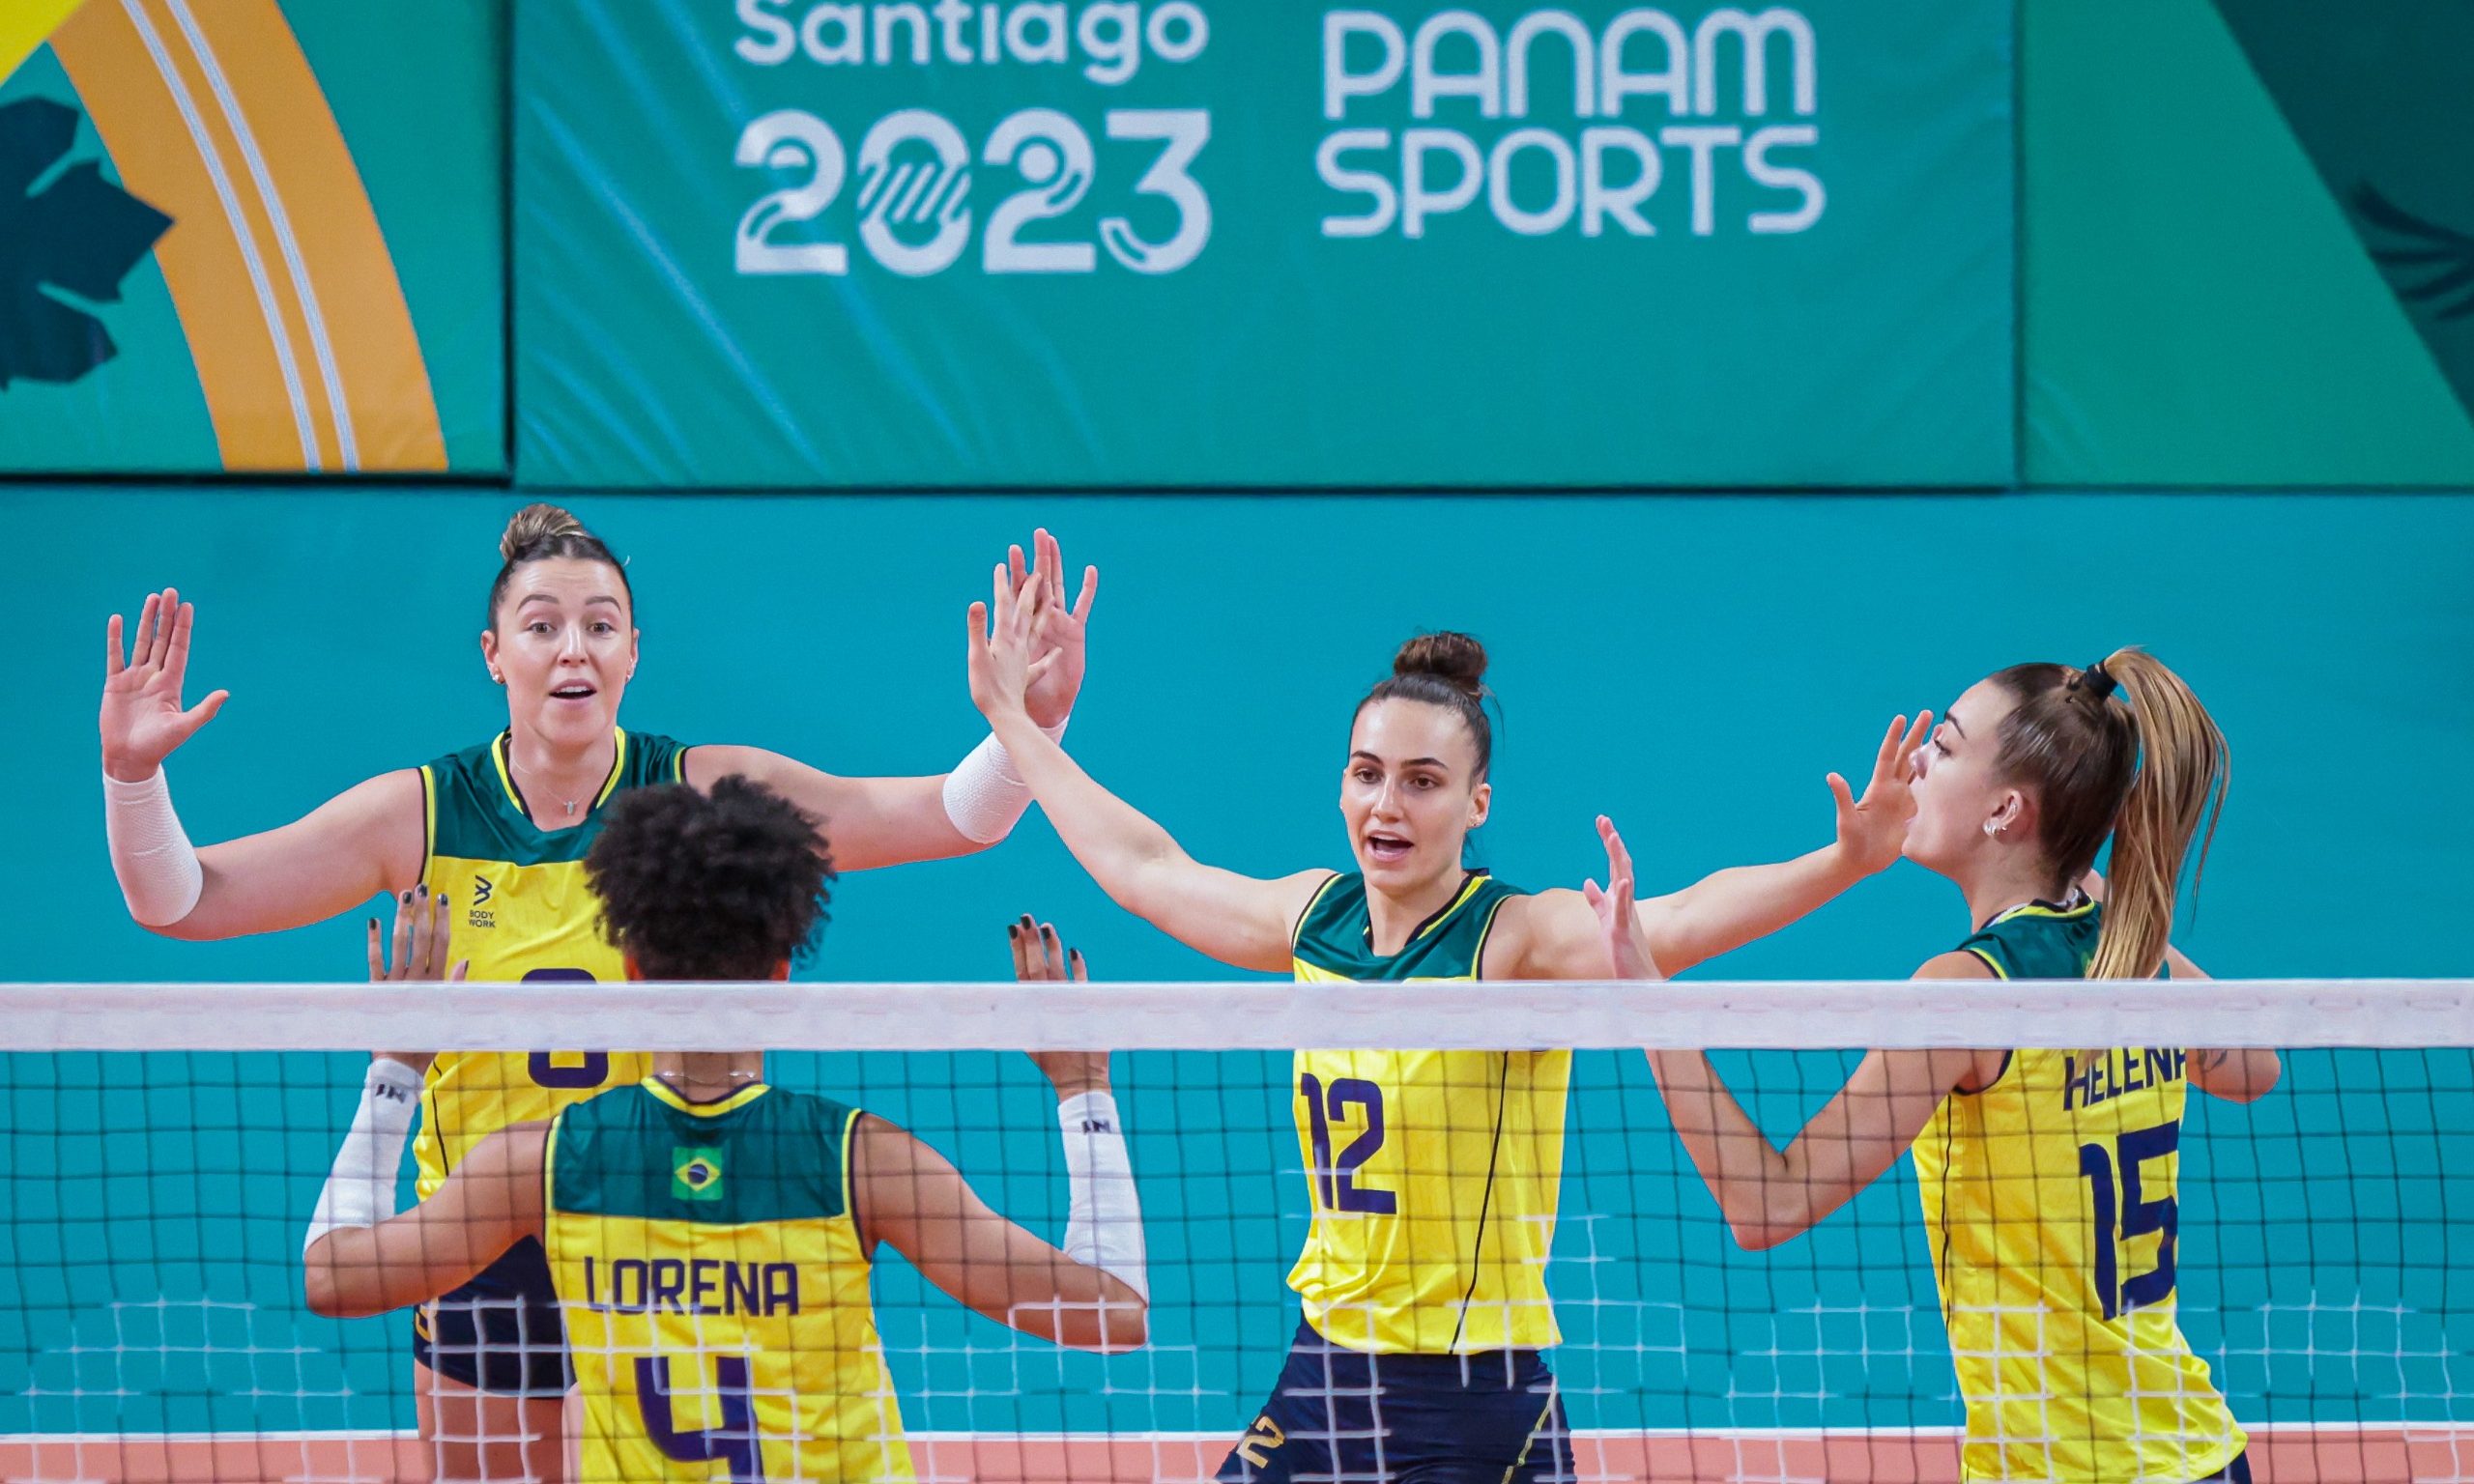 Vôlei Feminino nos Jogos Pan-Americanos de Santiago 2023: horário